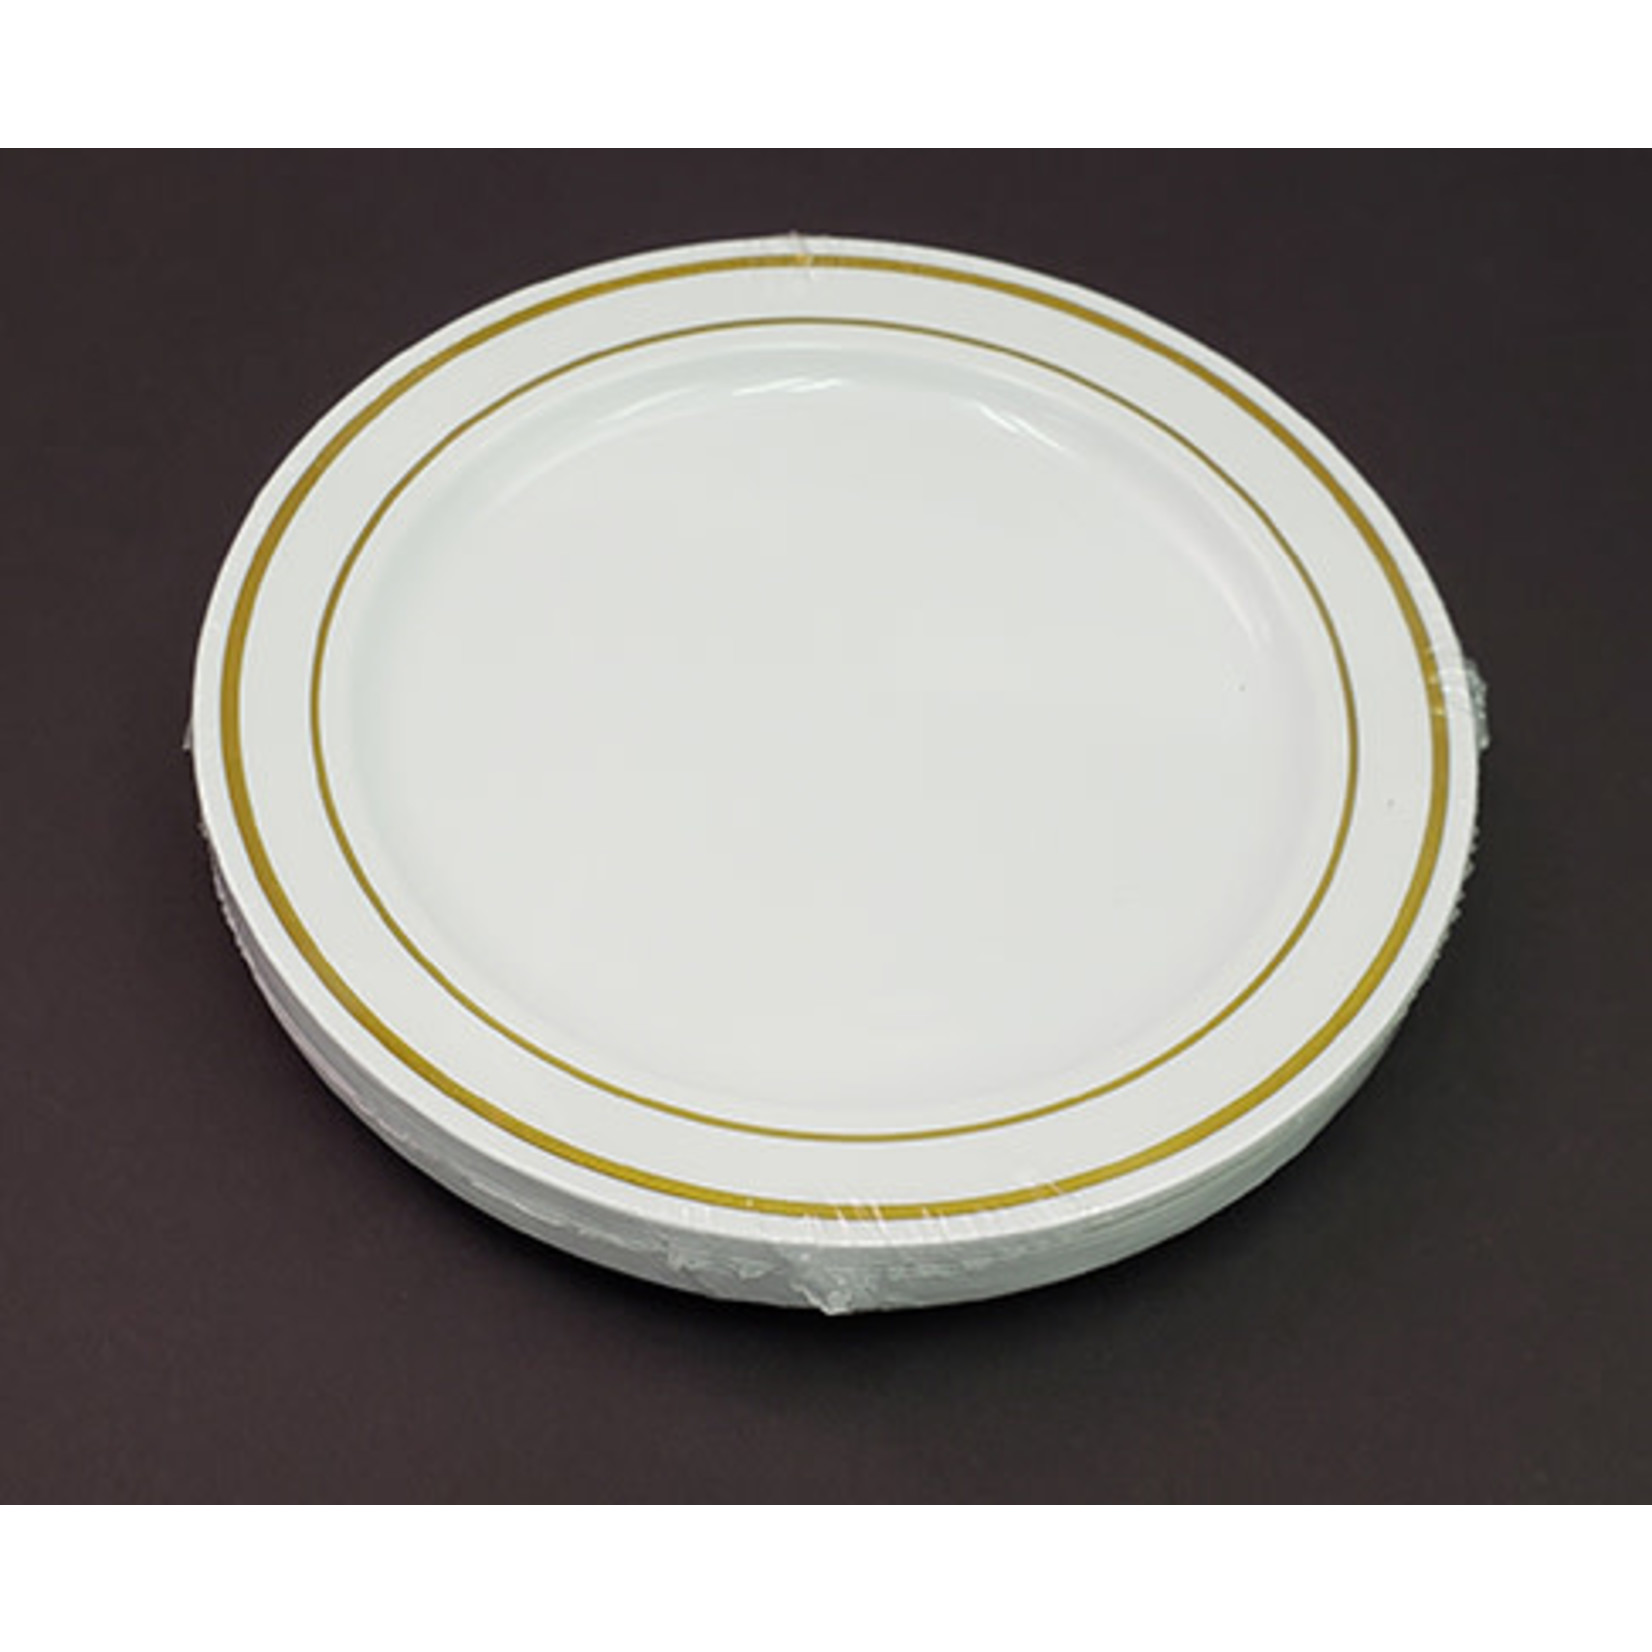 Elegant Dining 6" White w/ Gold Rim Premium Plates - 12ct.